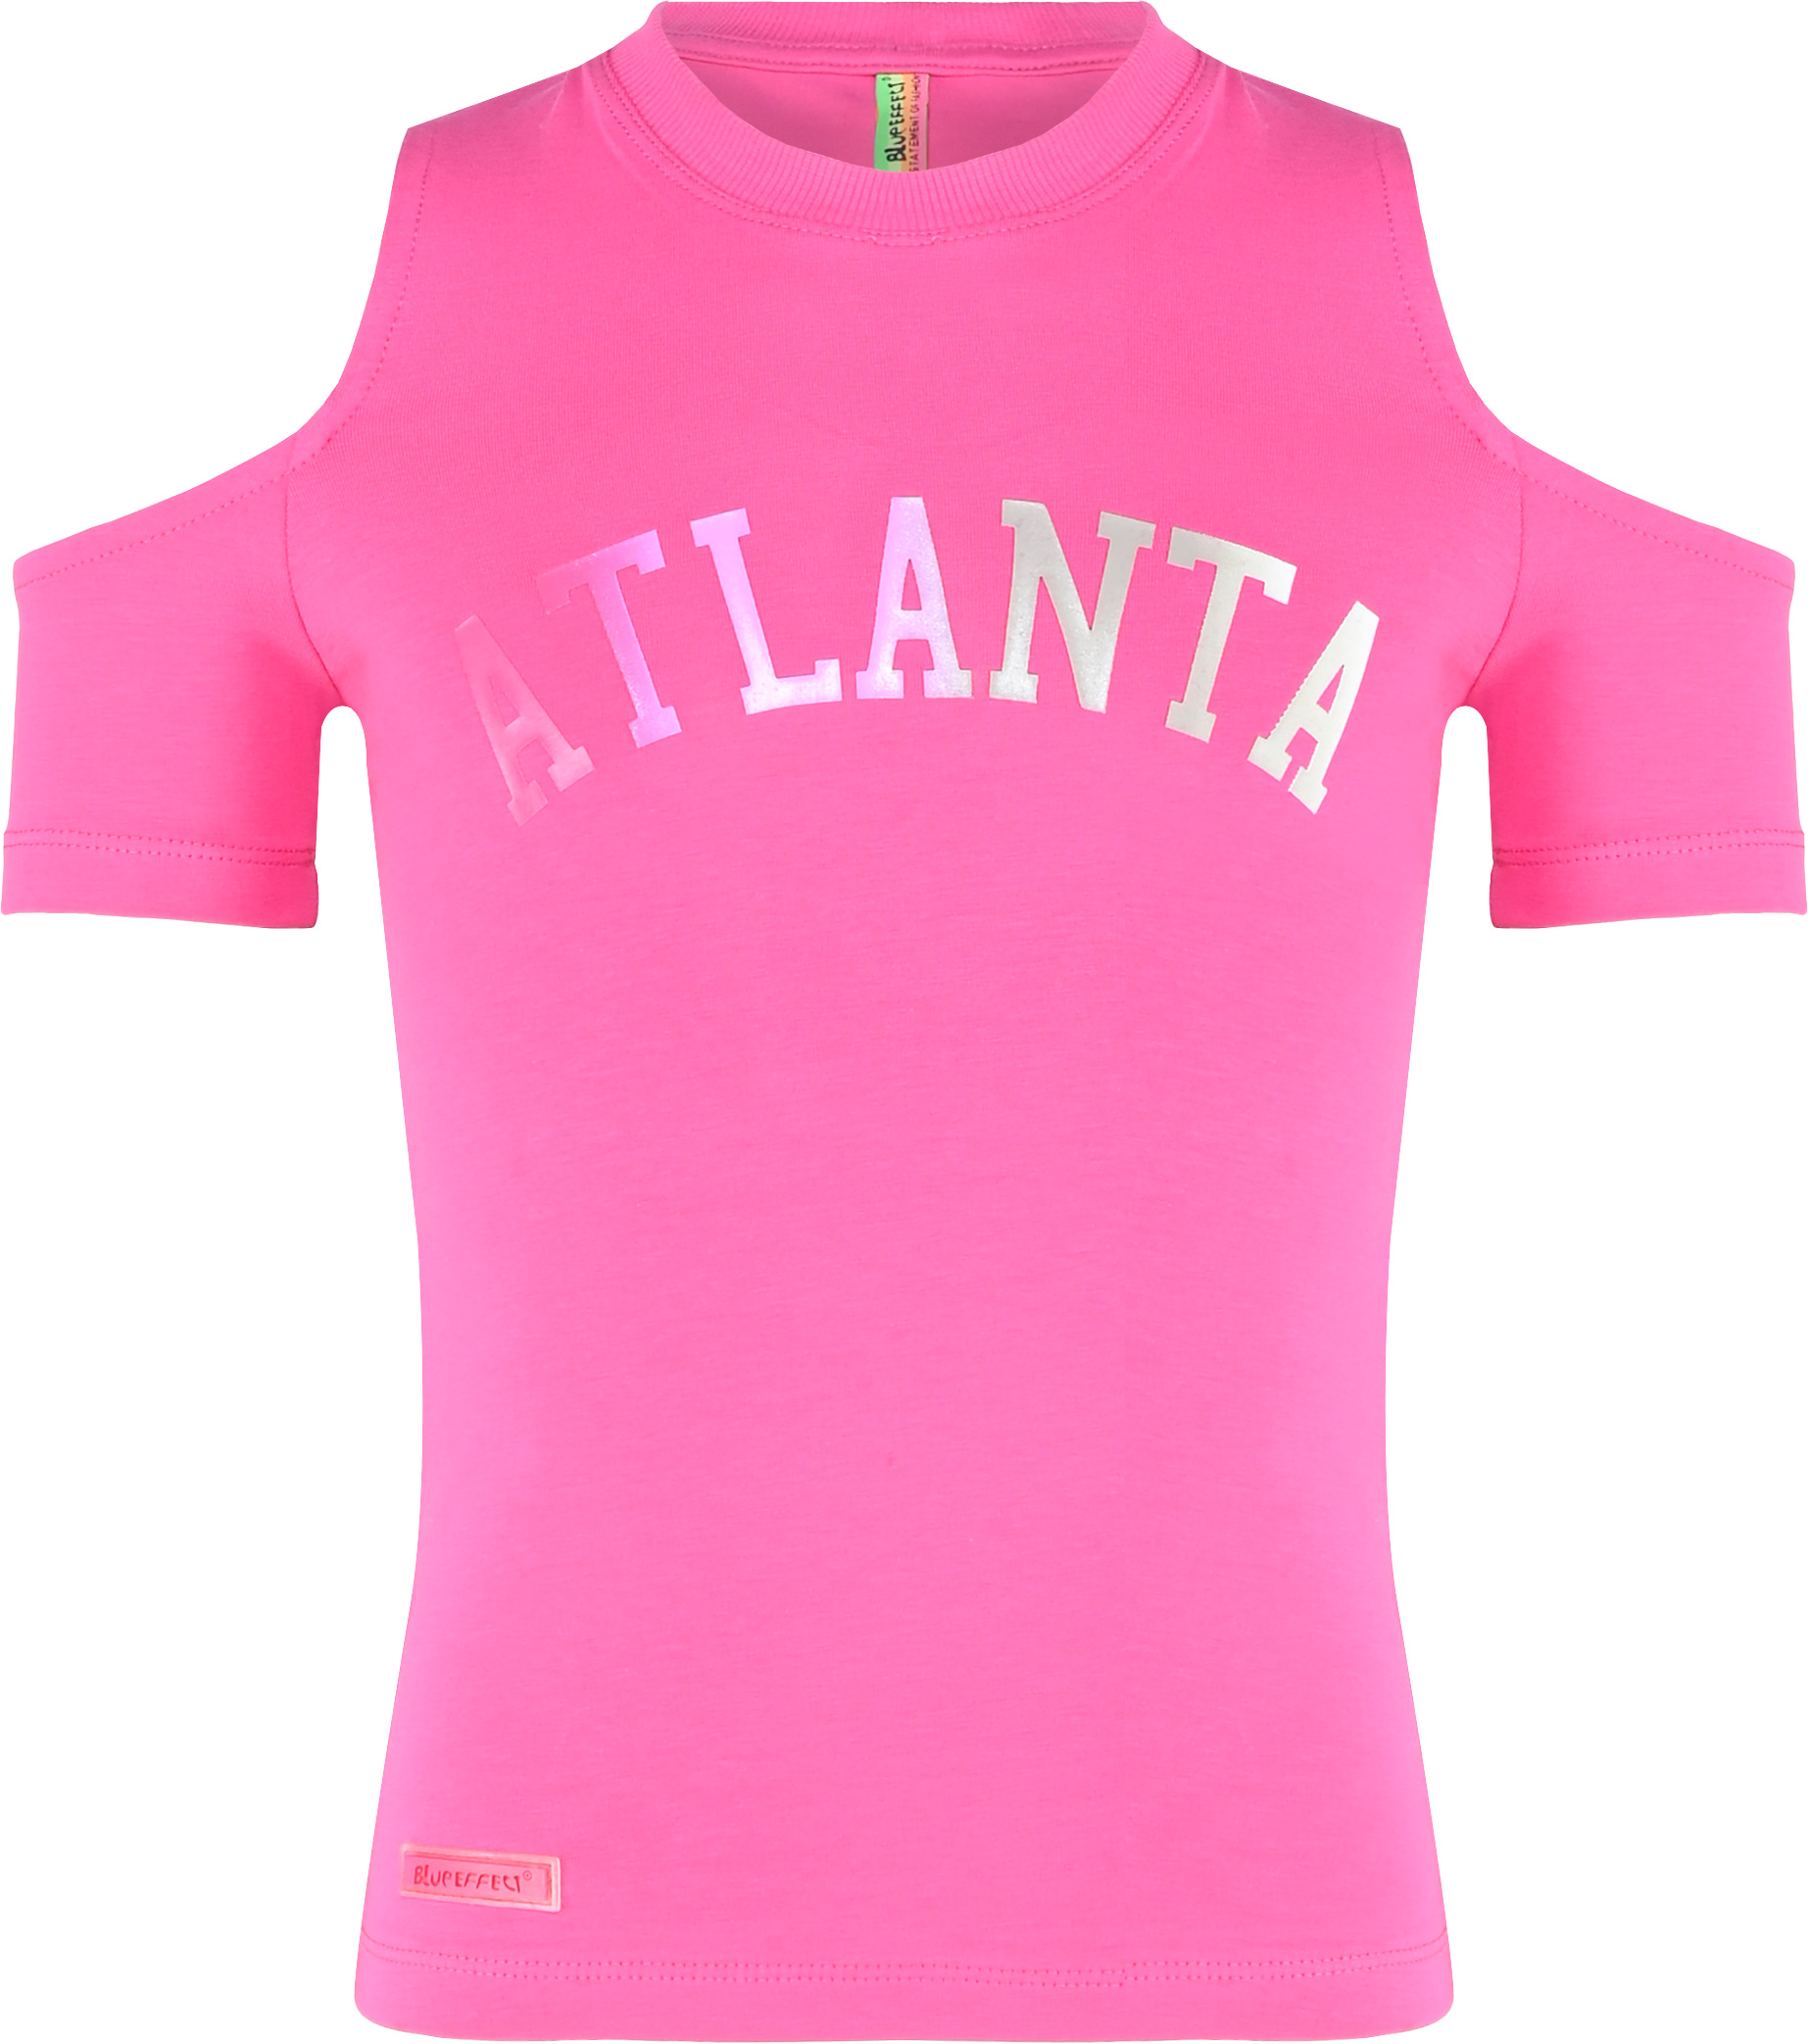 5734-Girls T-Shirt -Atlanta